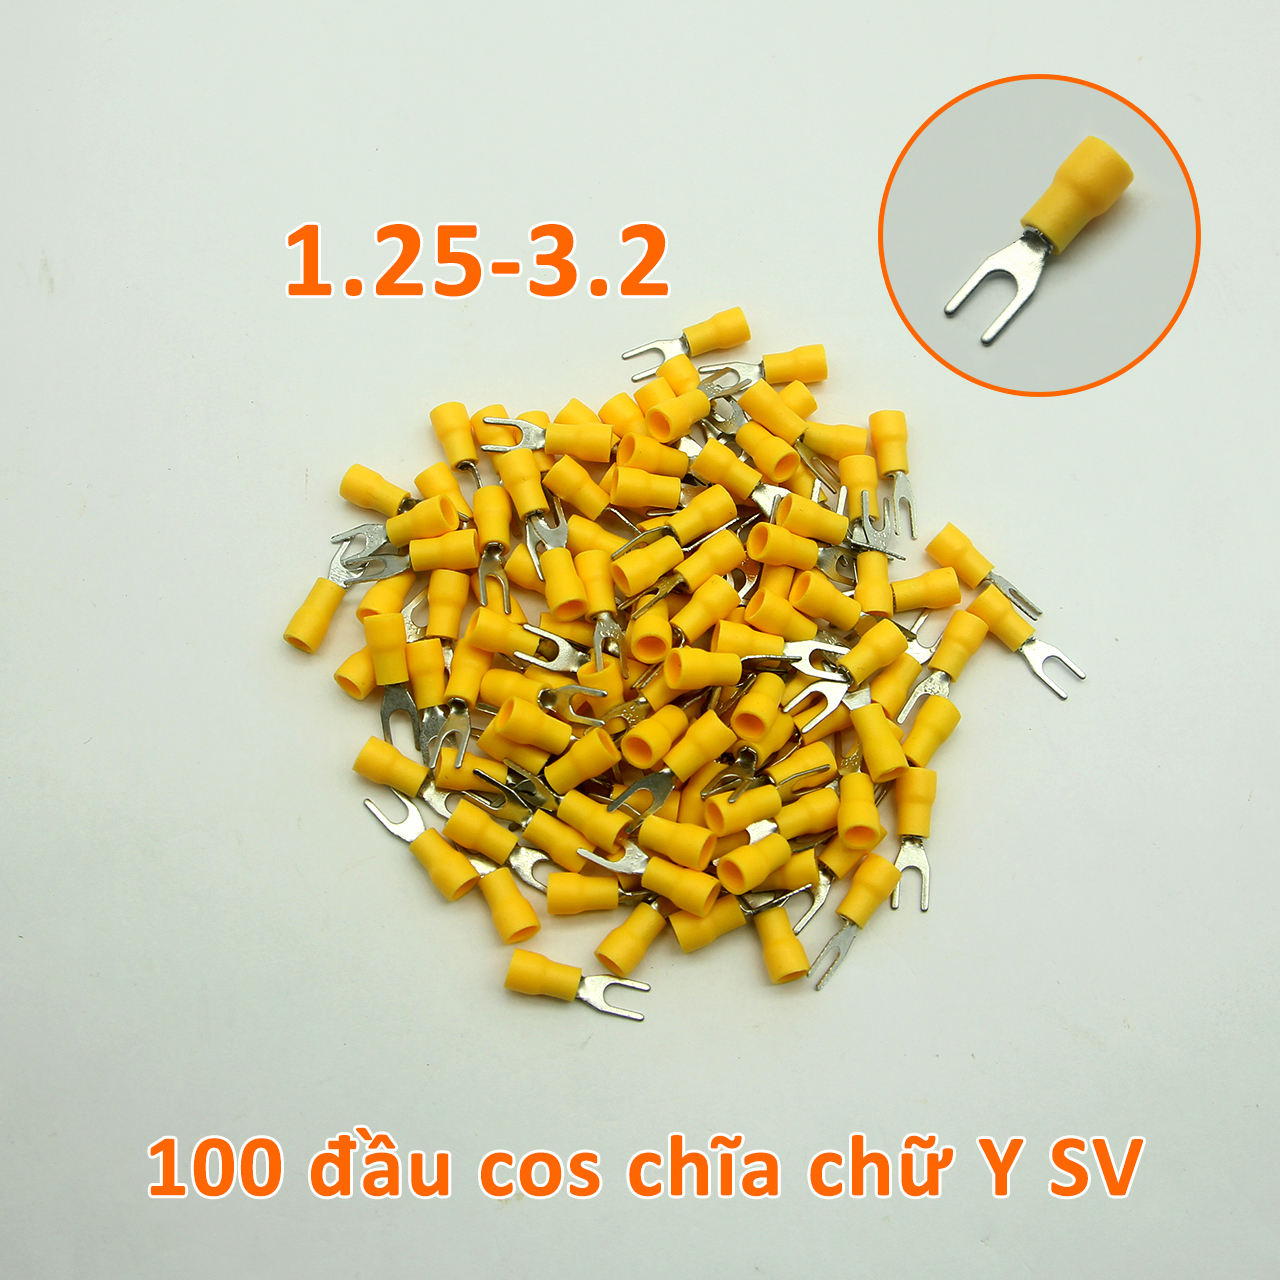 Túi 100 đầu cos chĩa chữ Y SV 1.25-3.2 bọc nhựa vàng